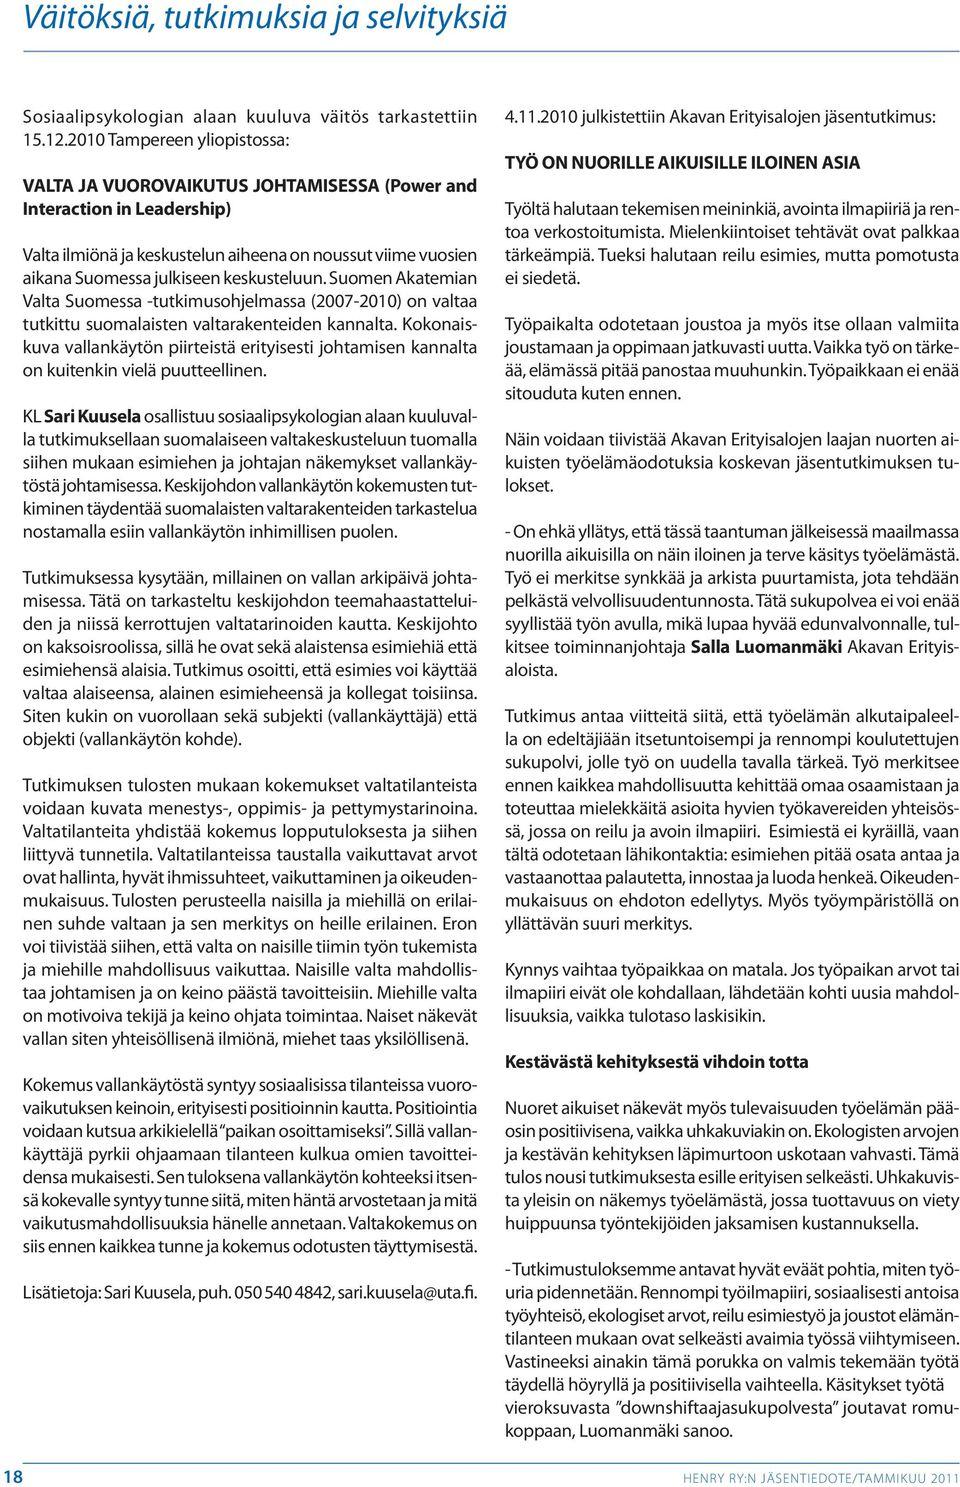 keskusteluun. Suomen Akatemian Valta Suomessa -tutkimusohjelmassa (2007-2010) on valtaa tutkittu suomalaisten valtarakenteiden kannalta.